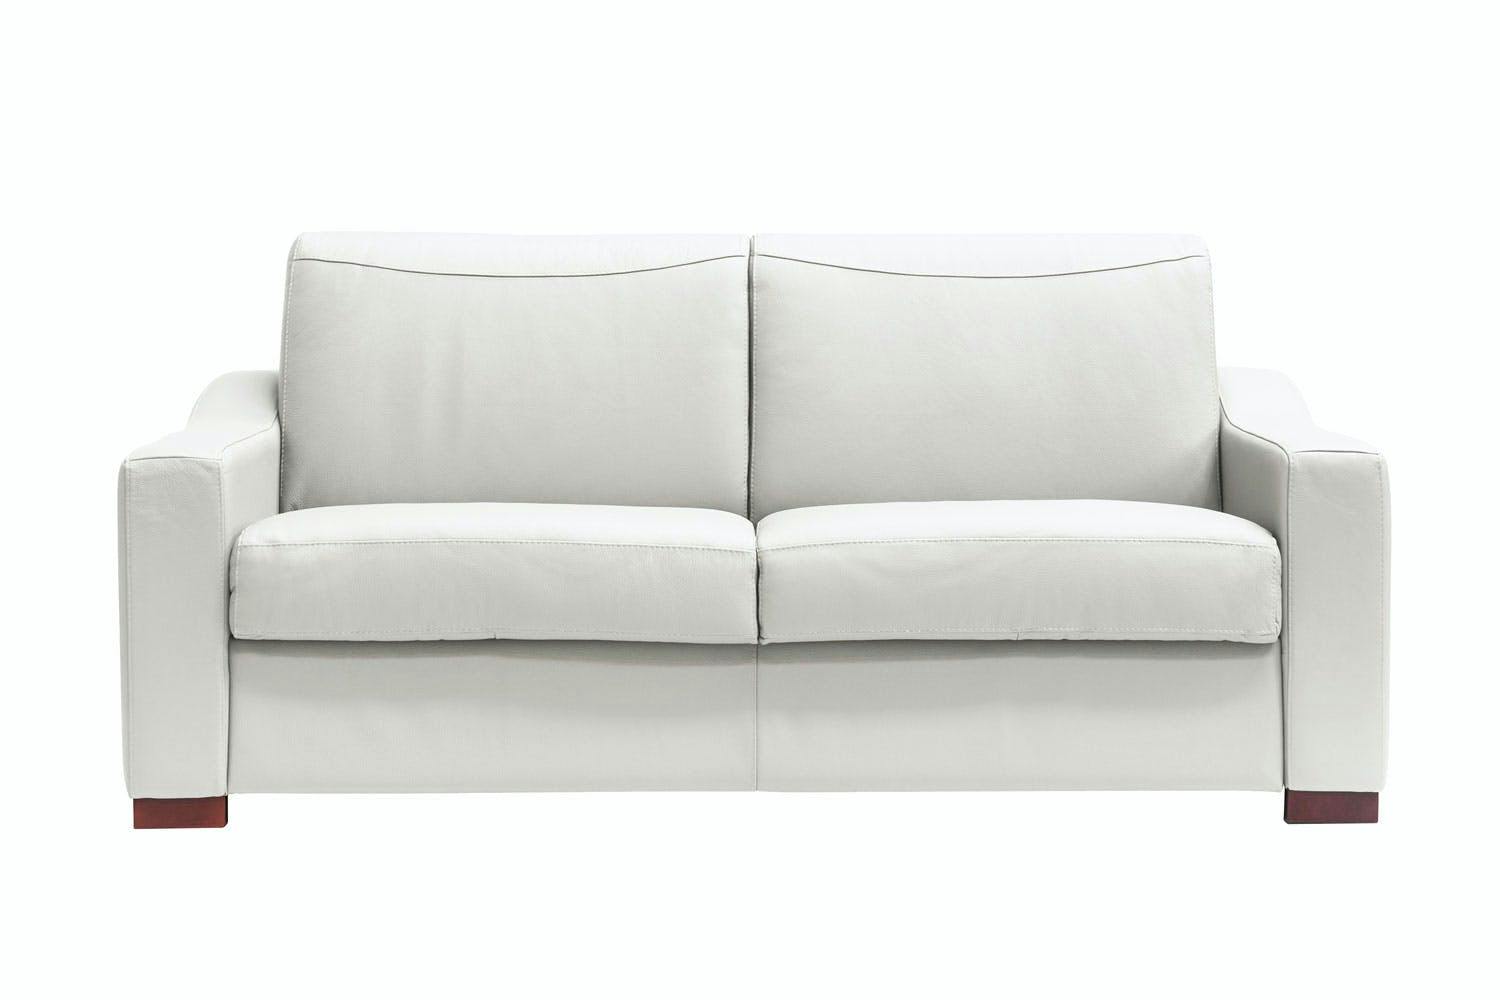 buy sofa bed online ireland